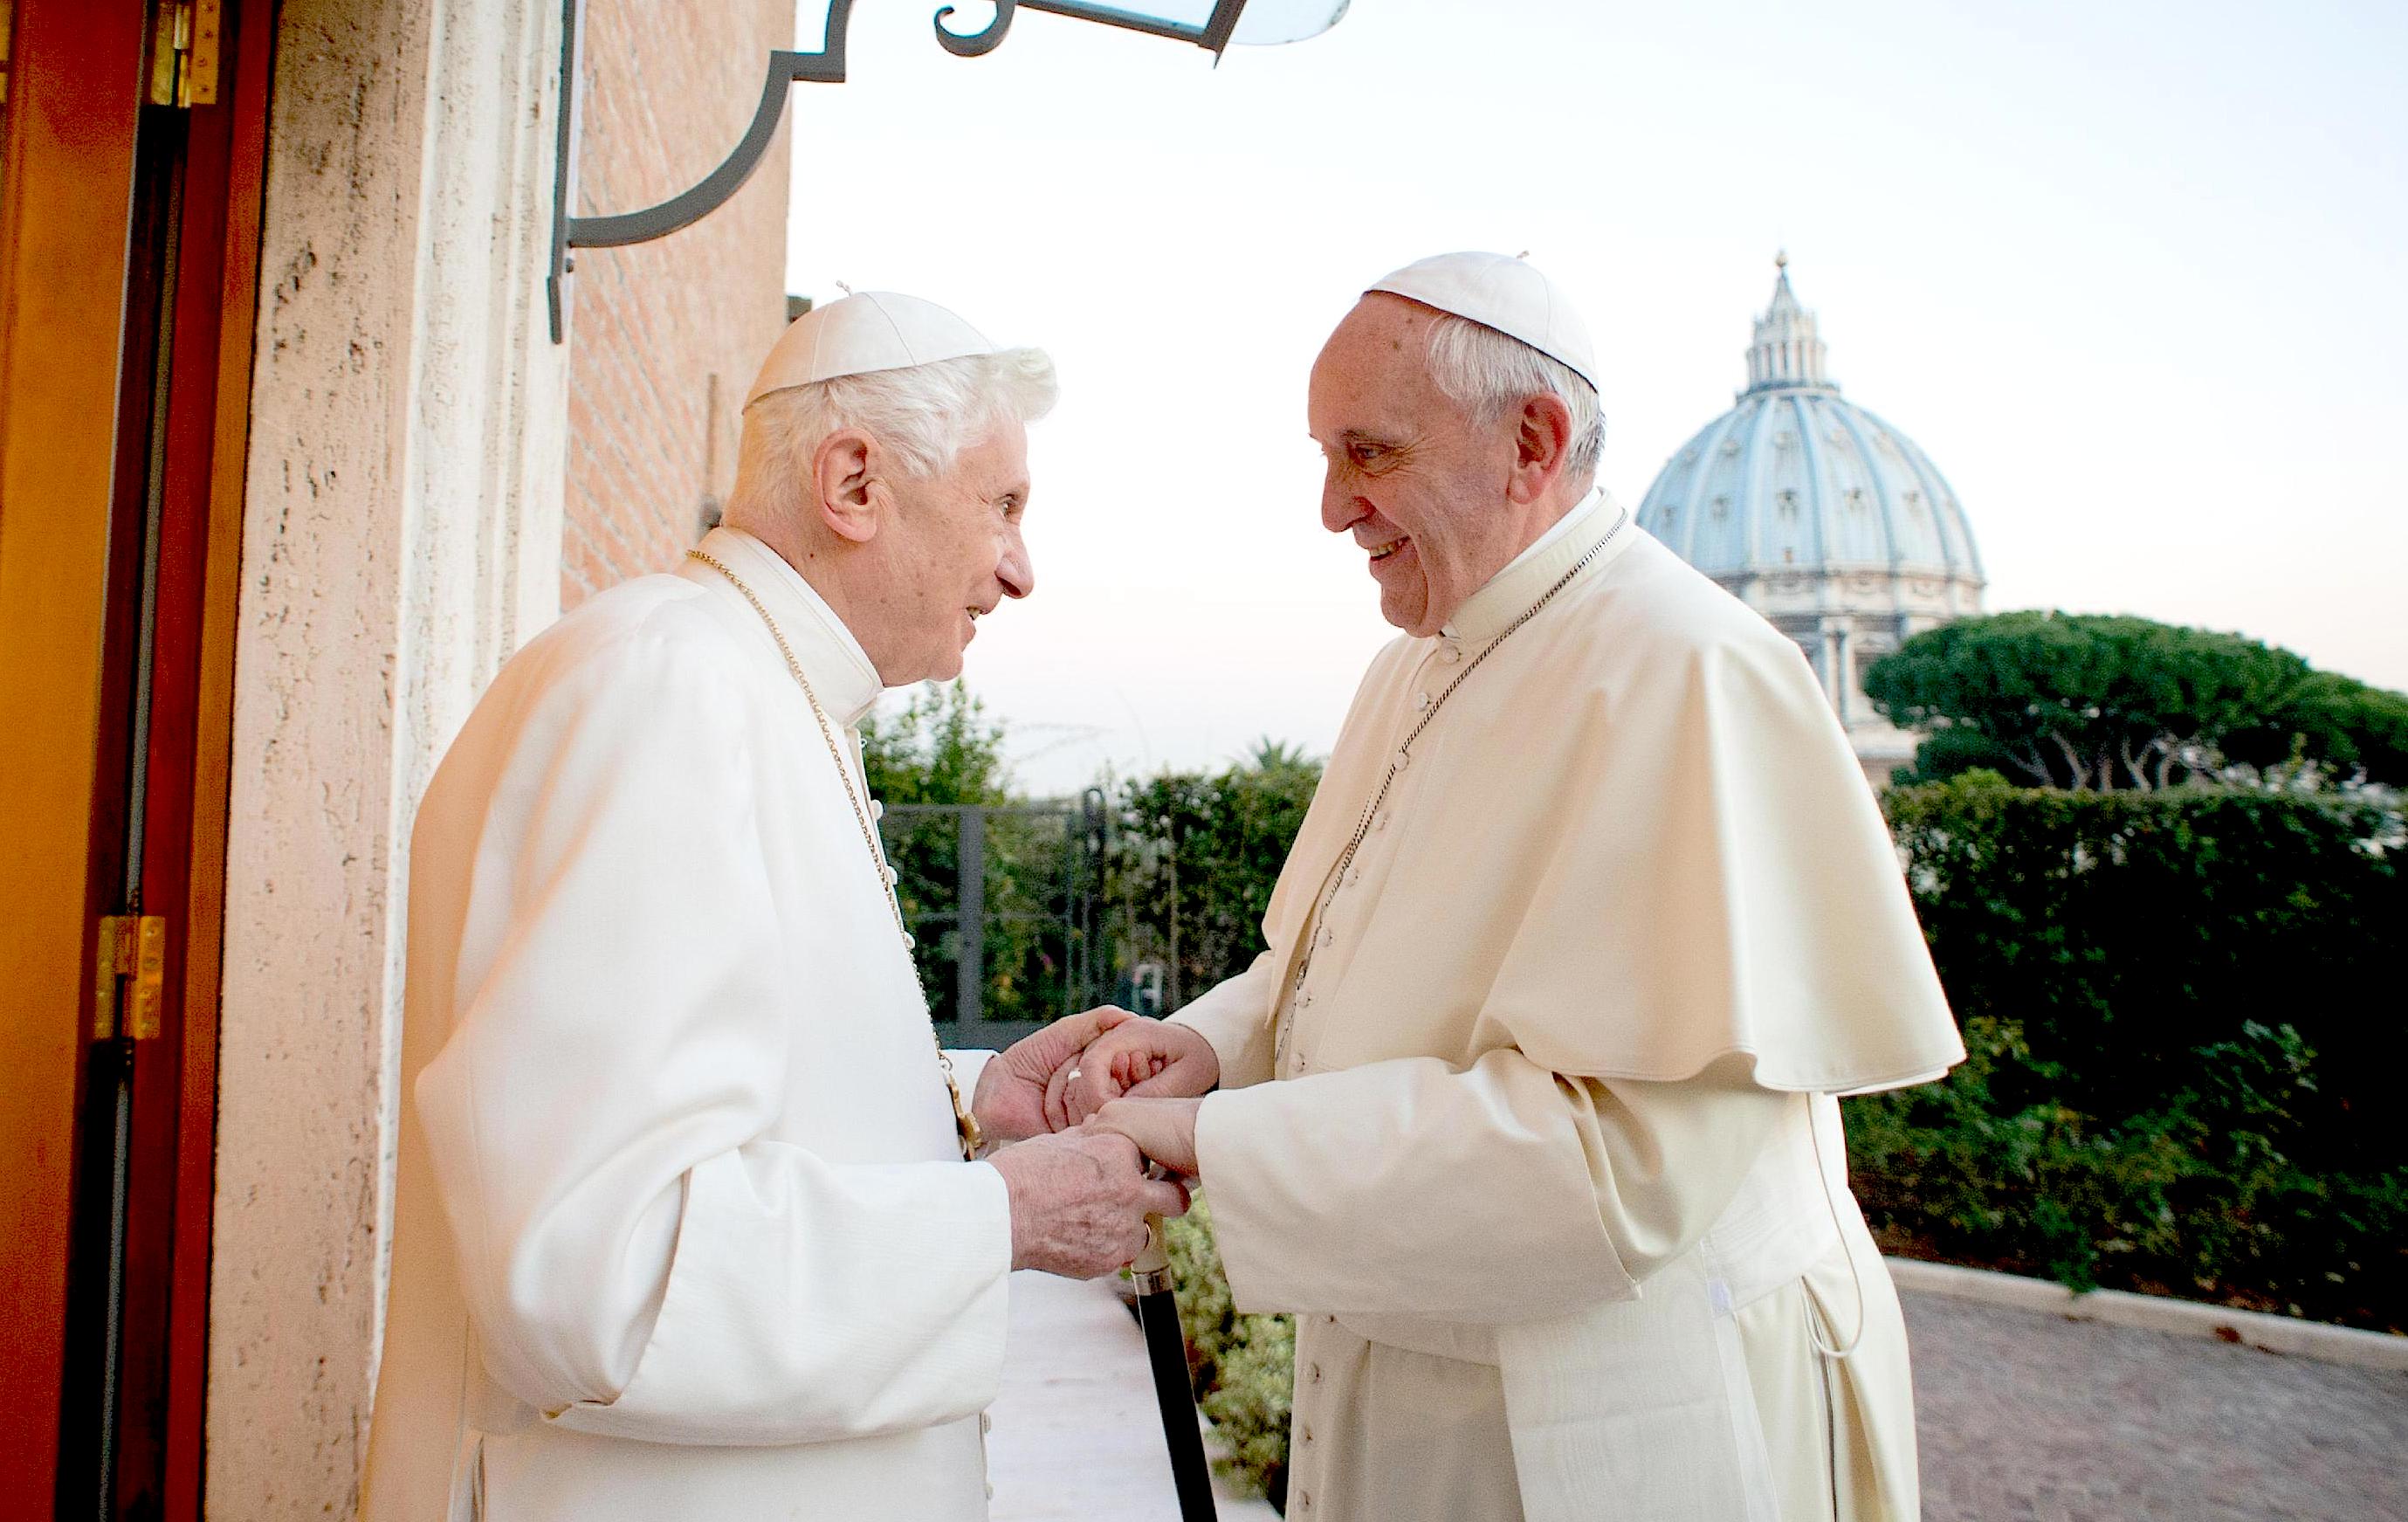 Pope Francis with pope emeritus Benedictus XVI